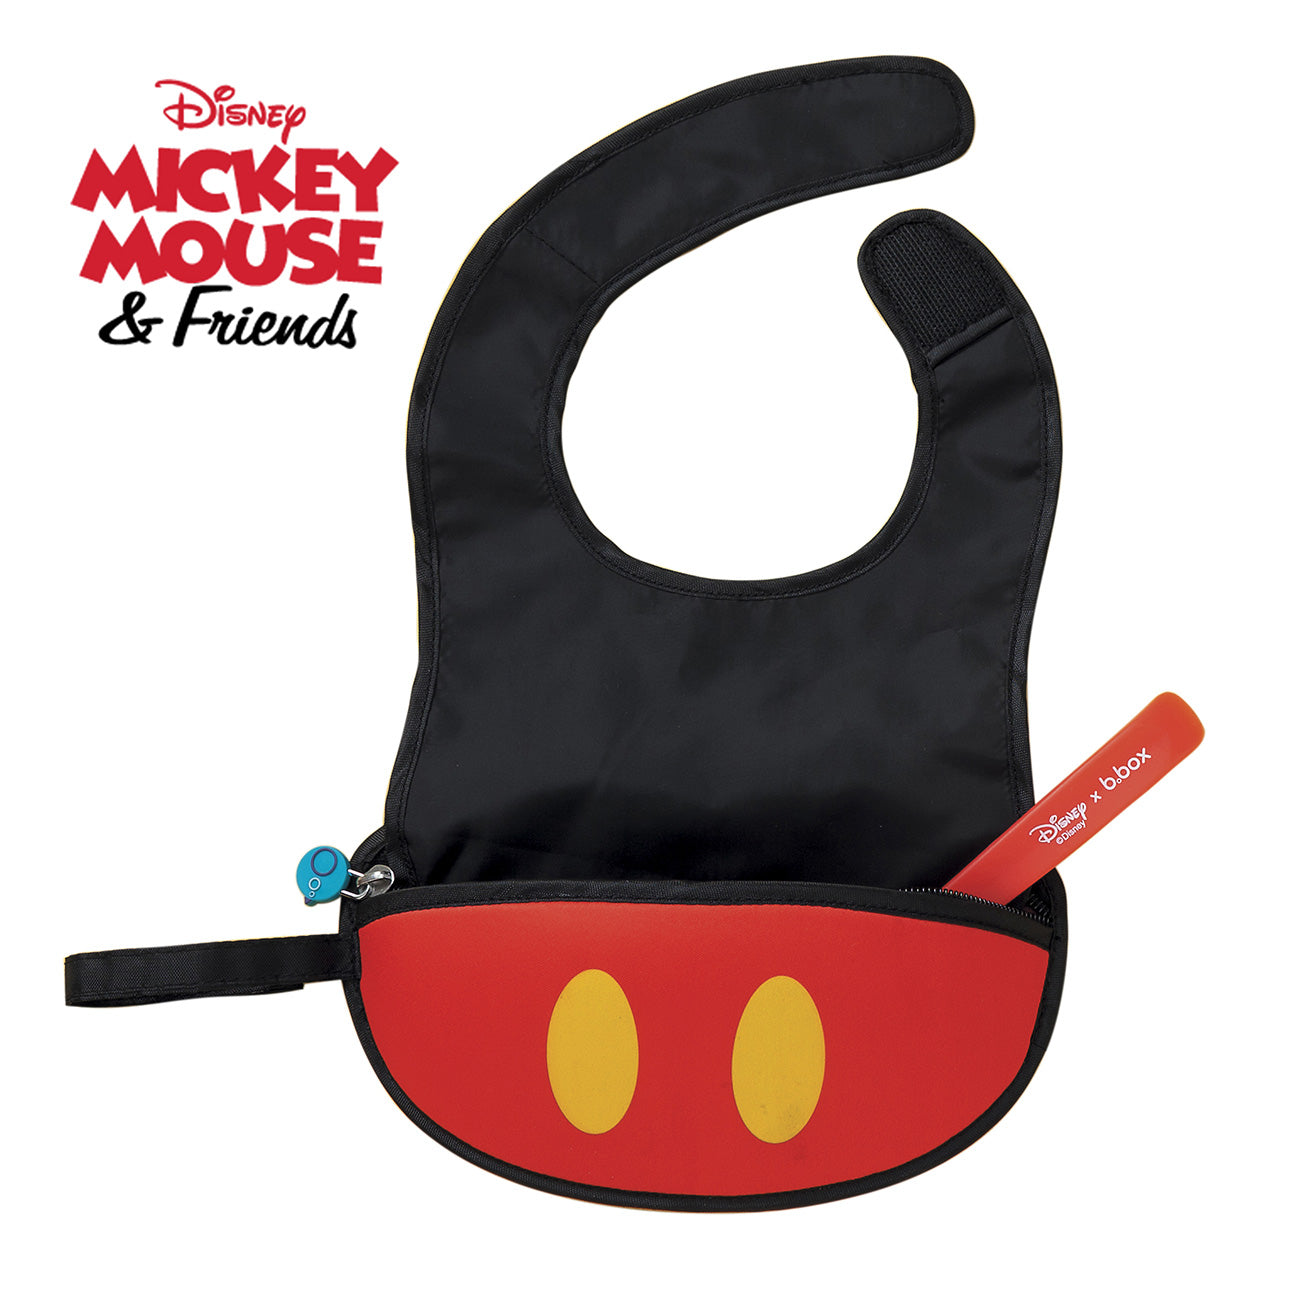 ［スプーン付き］ディズニートラベルビブ（お食事エプロン）/Disney Travel bib+flexible spoon - Mickey